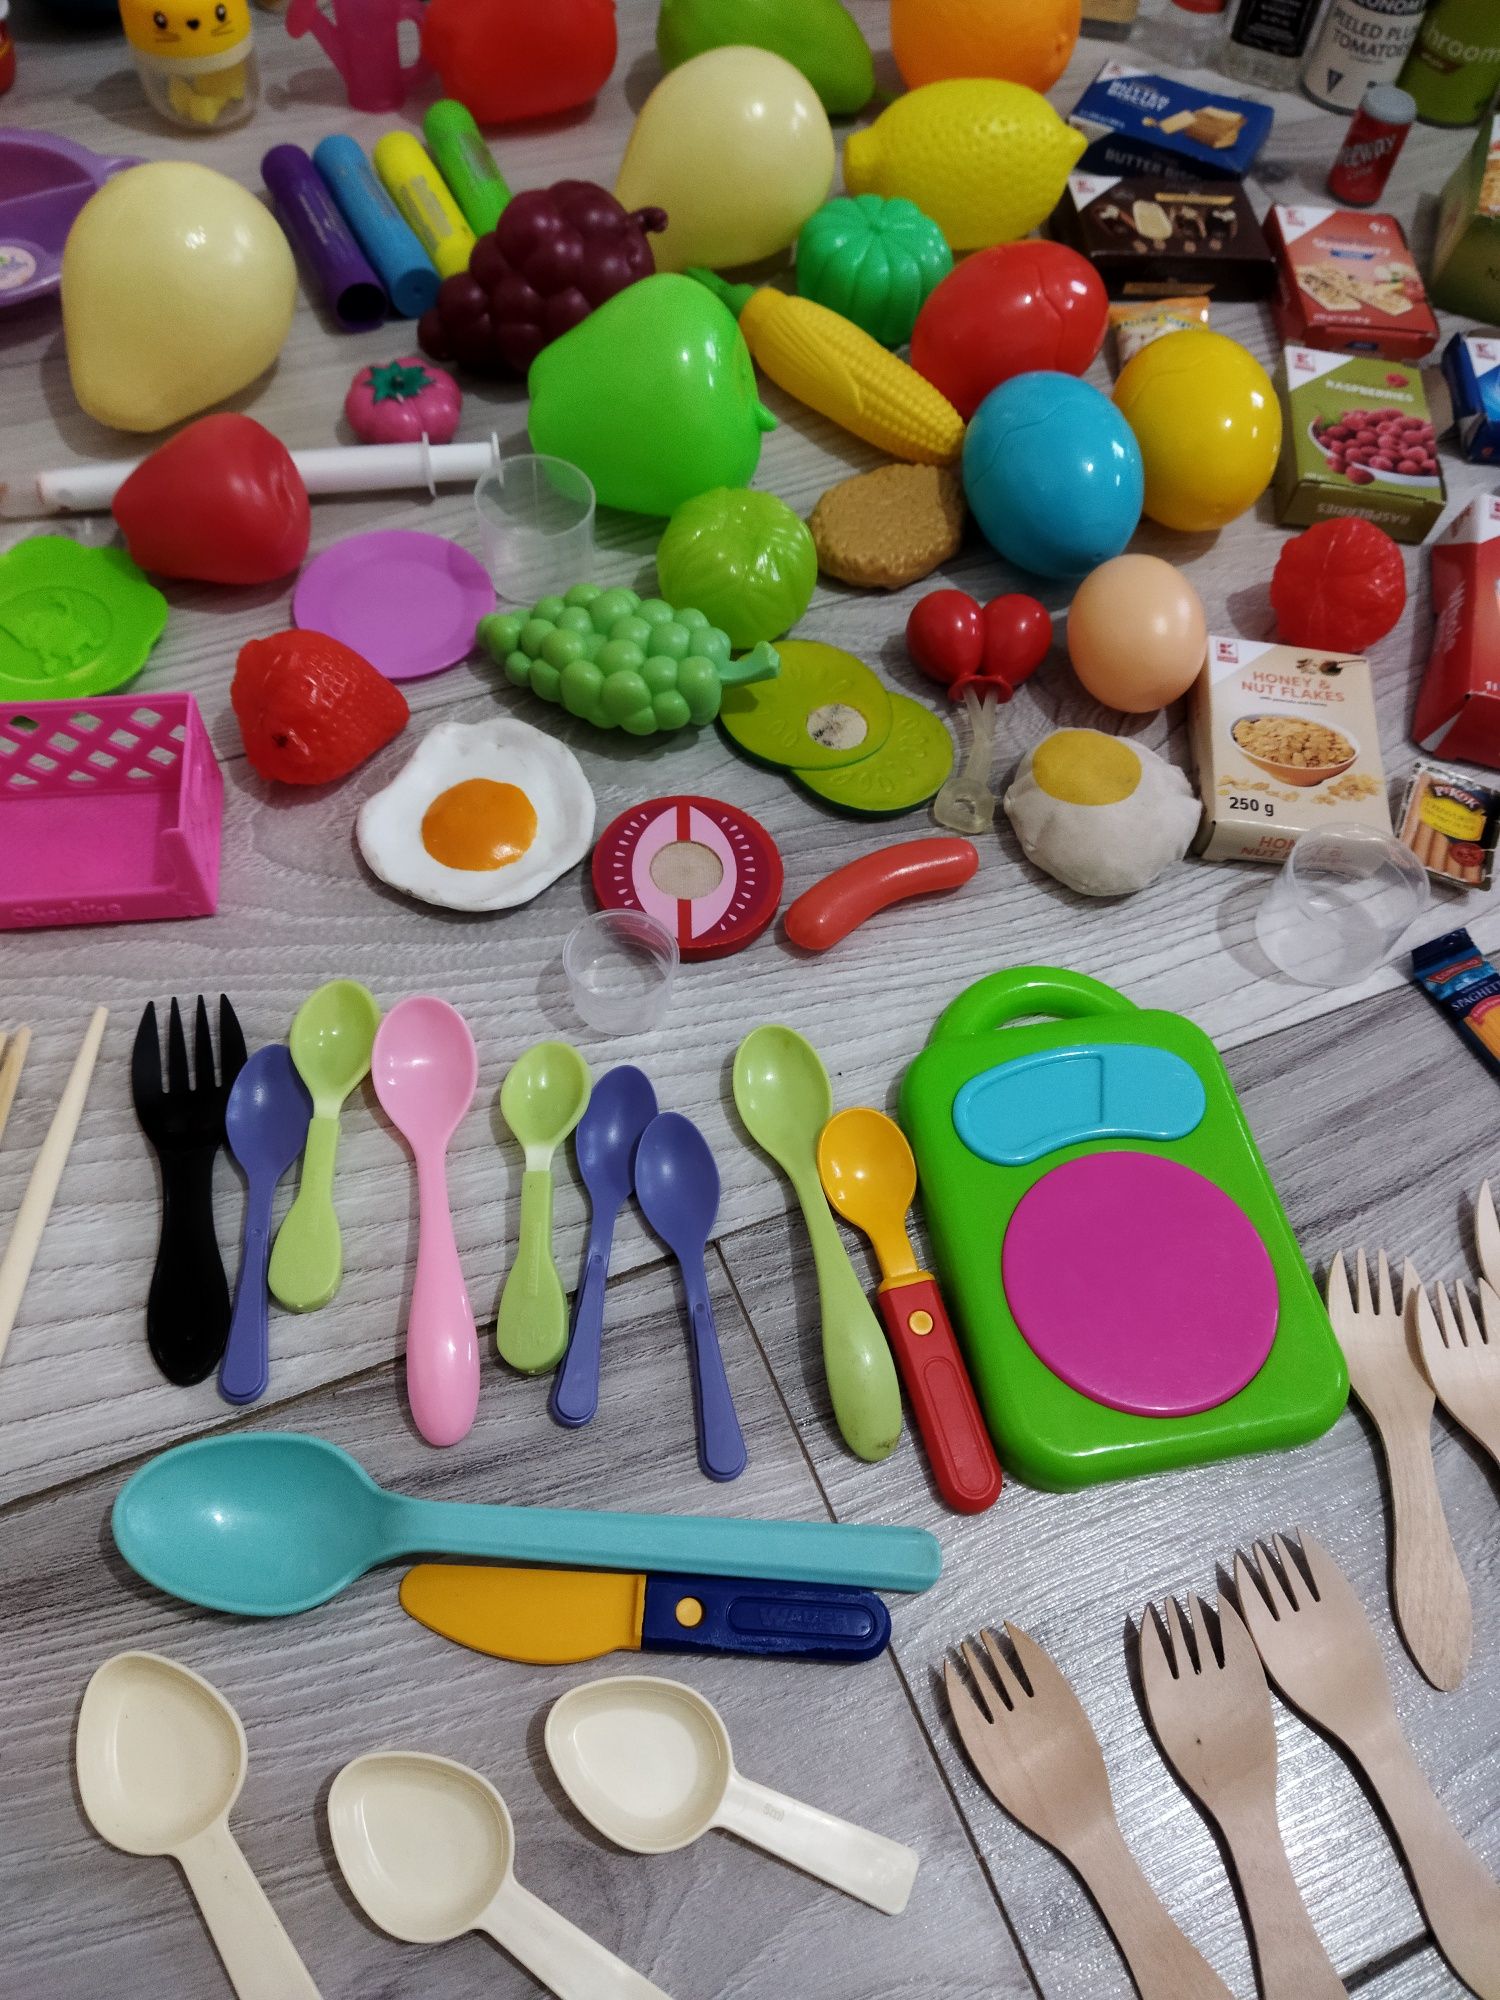 Lot de jucării accesorii mâncare fructe legume băutură bucătărie copii